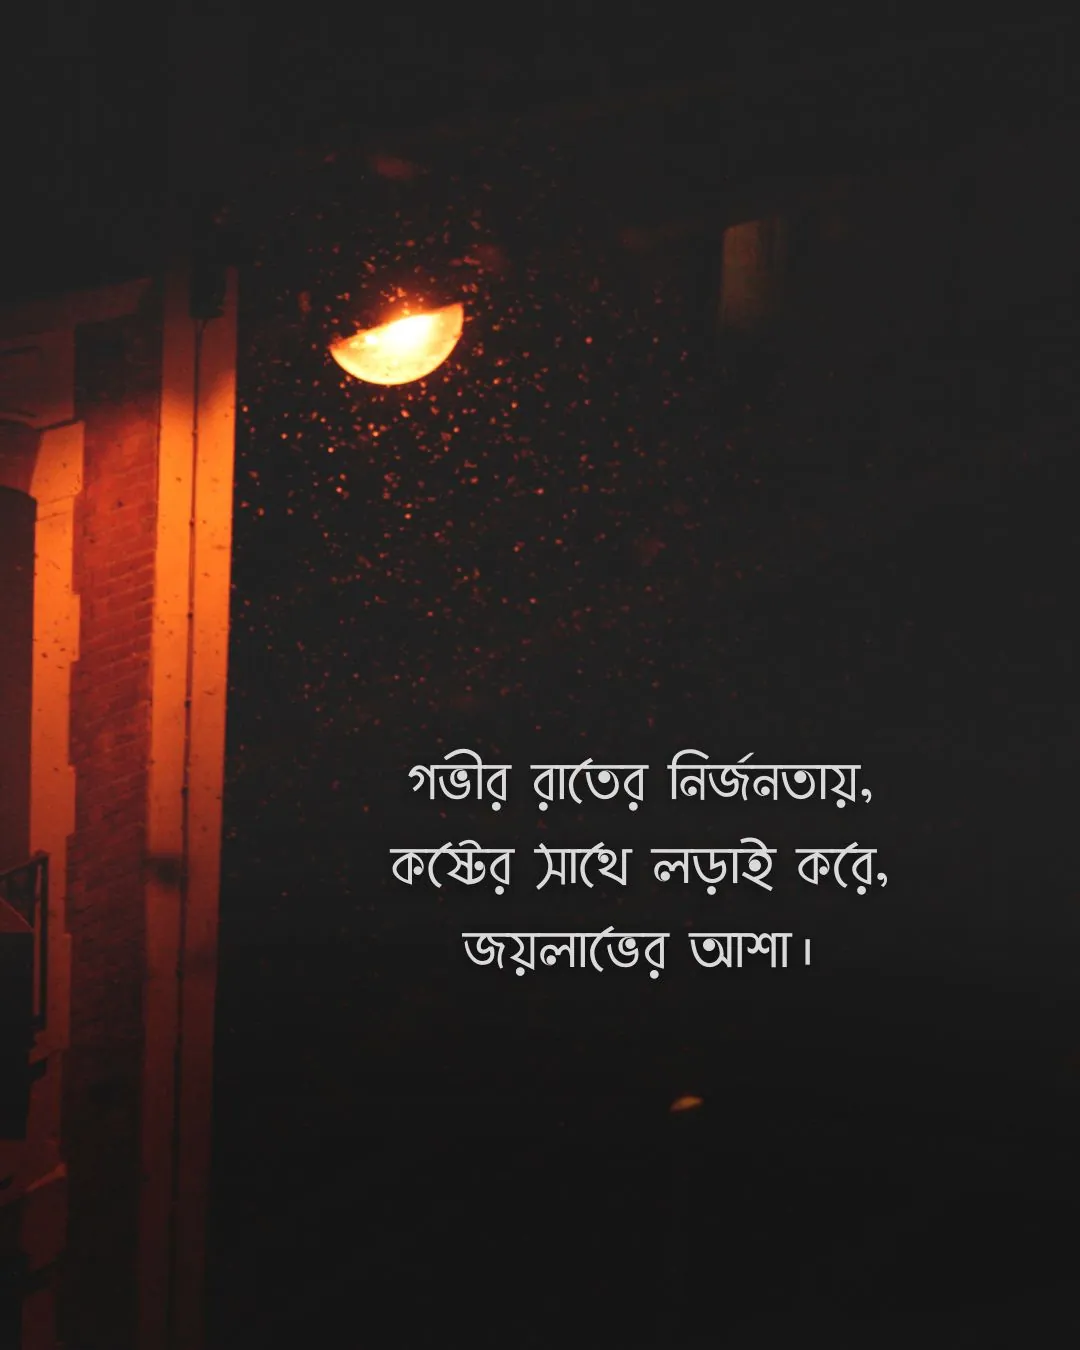 গভীর রাতের নির্জনতায়, কষ্টের সাথে লড়াই করে - sadness pic bangla